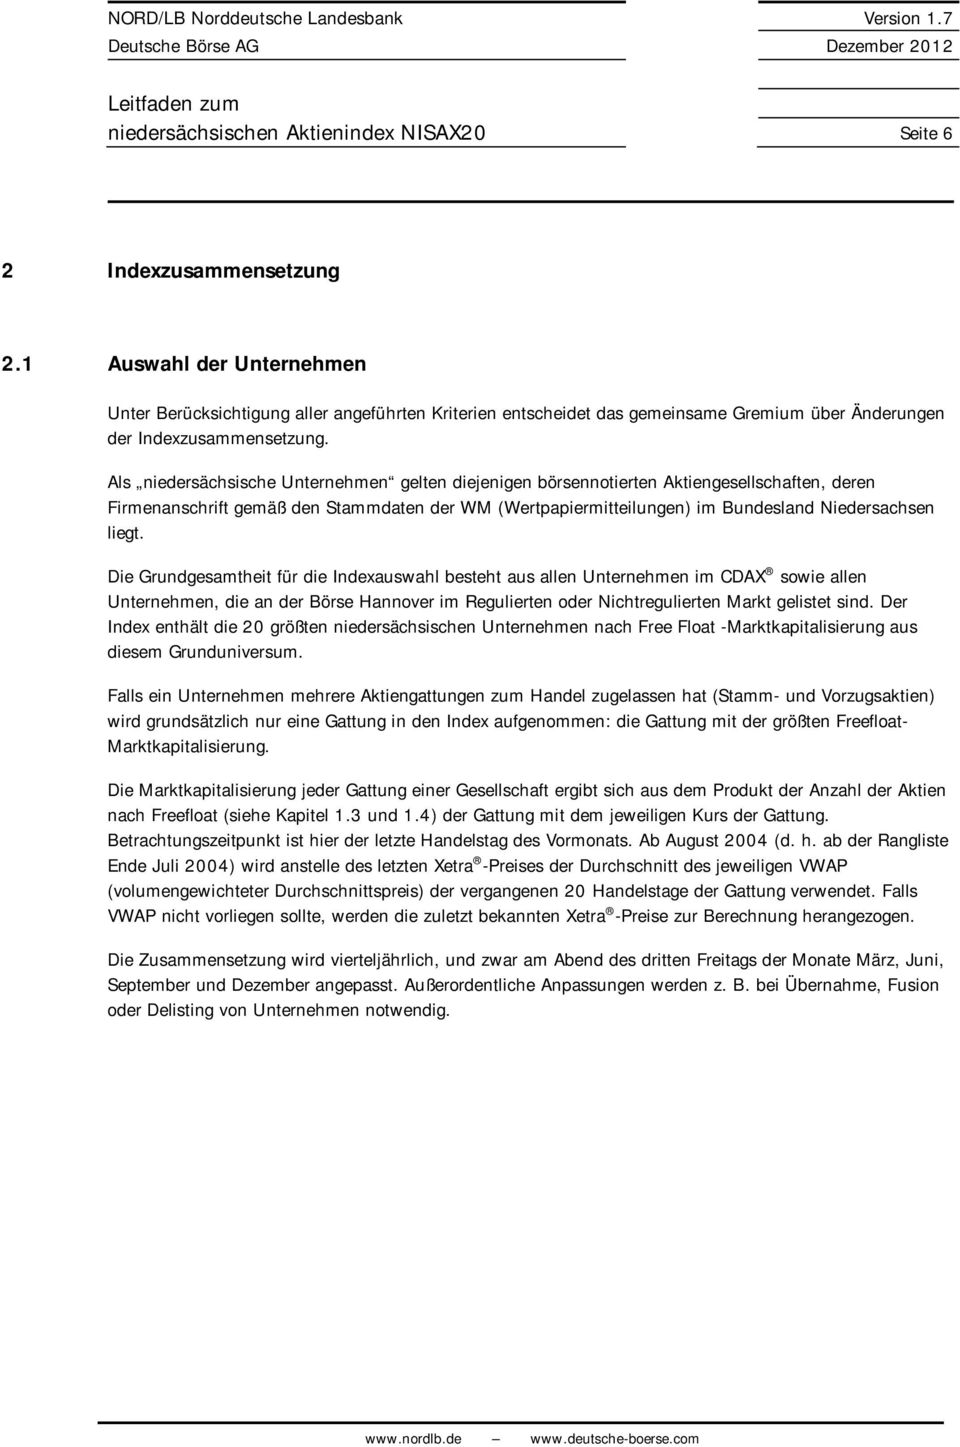 Als iedersächsische Uterehme gelte diejeige börseotierte Aktiegesellschafte, dere Firmeaschrift gemäß de Stammdate der WM (Wertaiermteiluge) im Budeslad Niedersachse liegt.